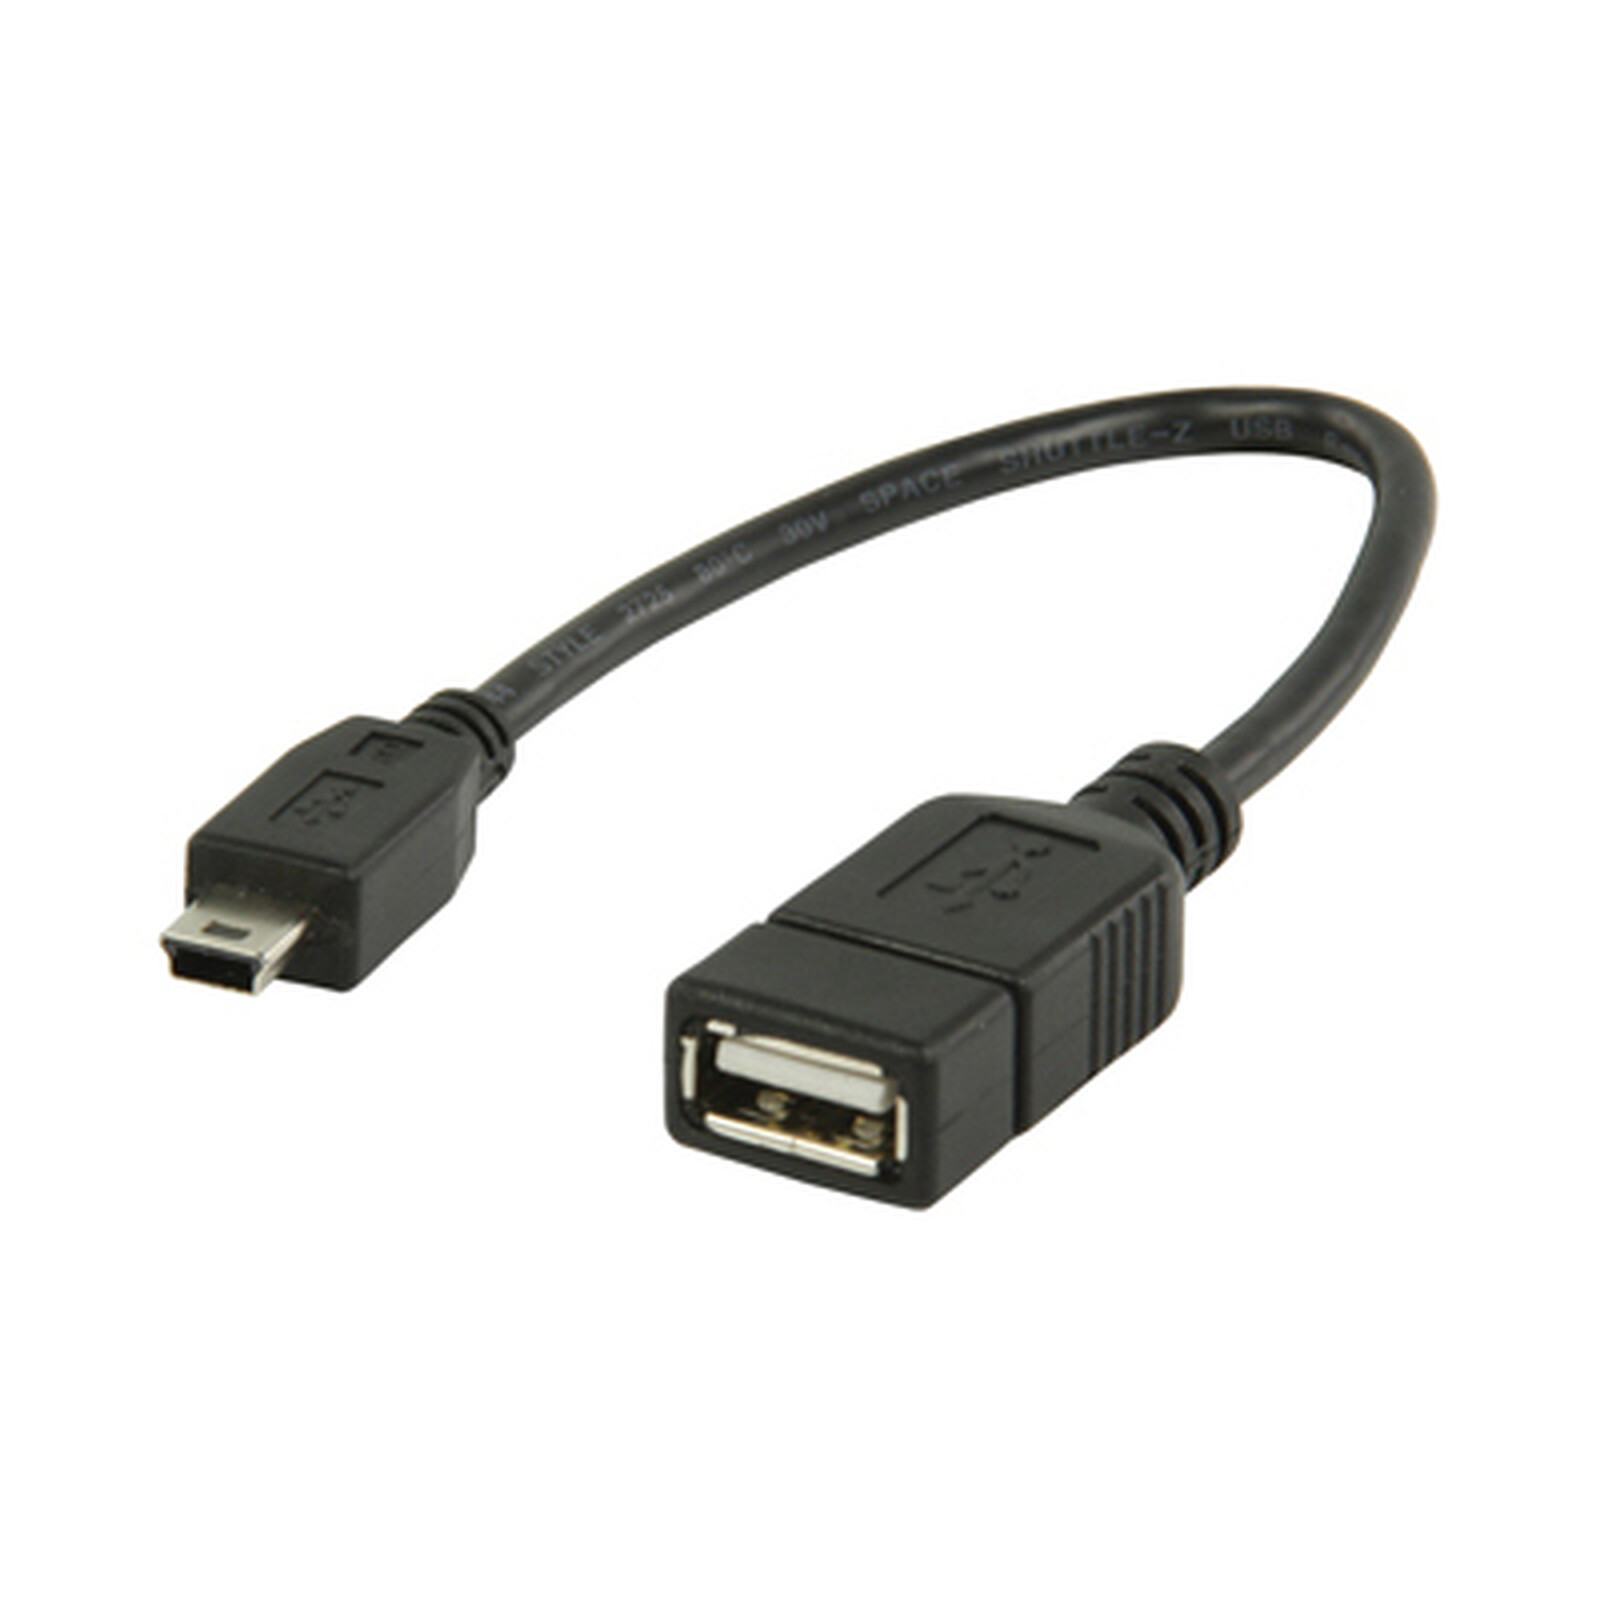 Universal Micro USB a USB 2.0 Otg Cable adaptador con alimentación